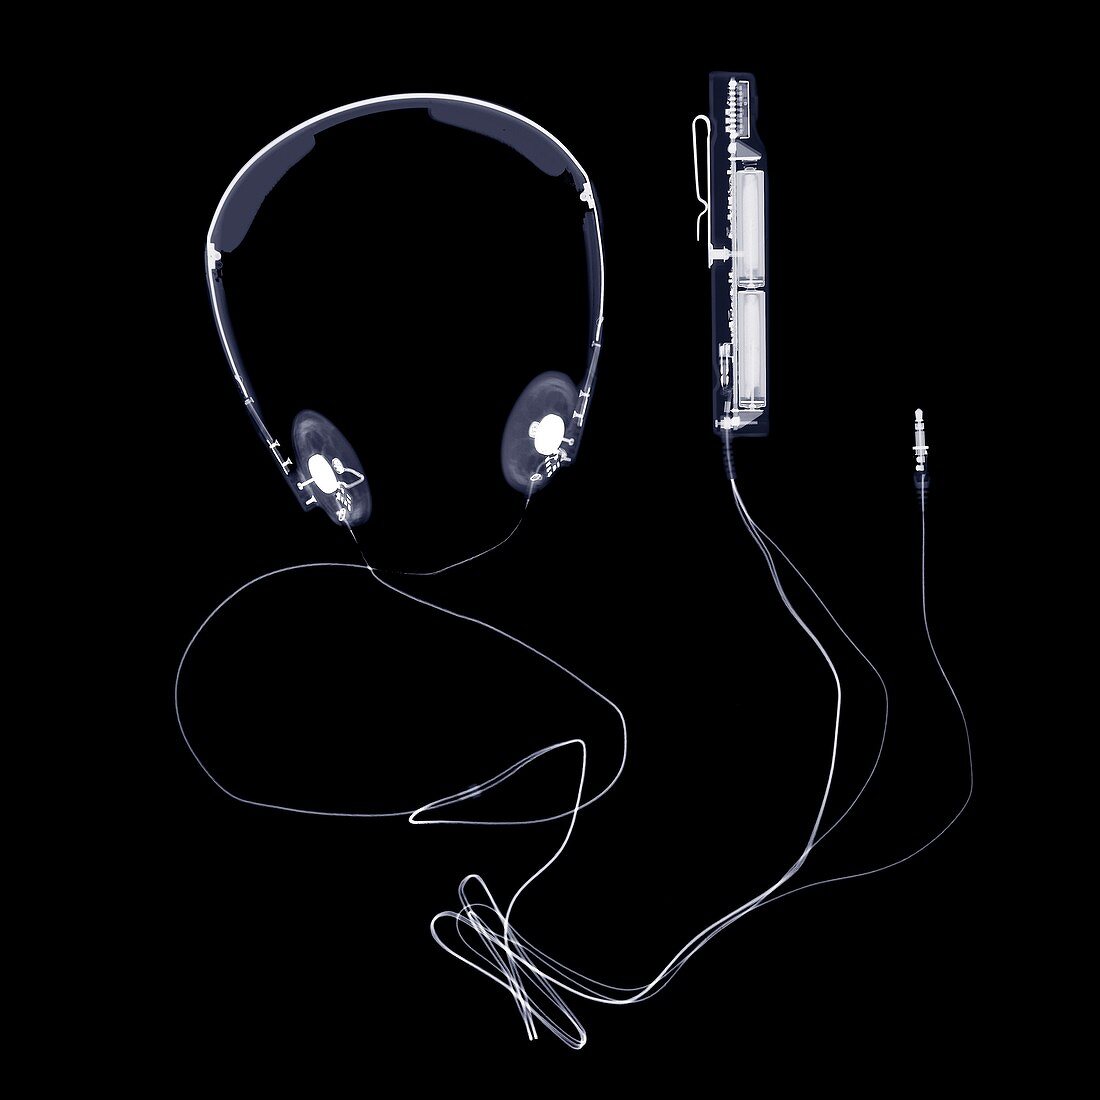 Headphones and volume control, X-ray